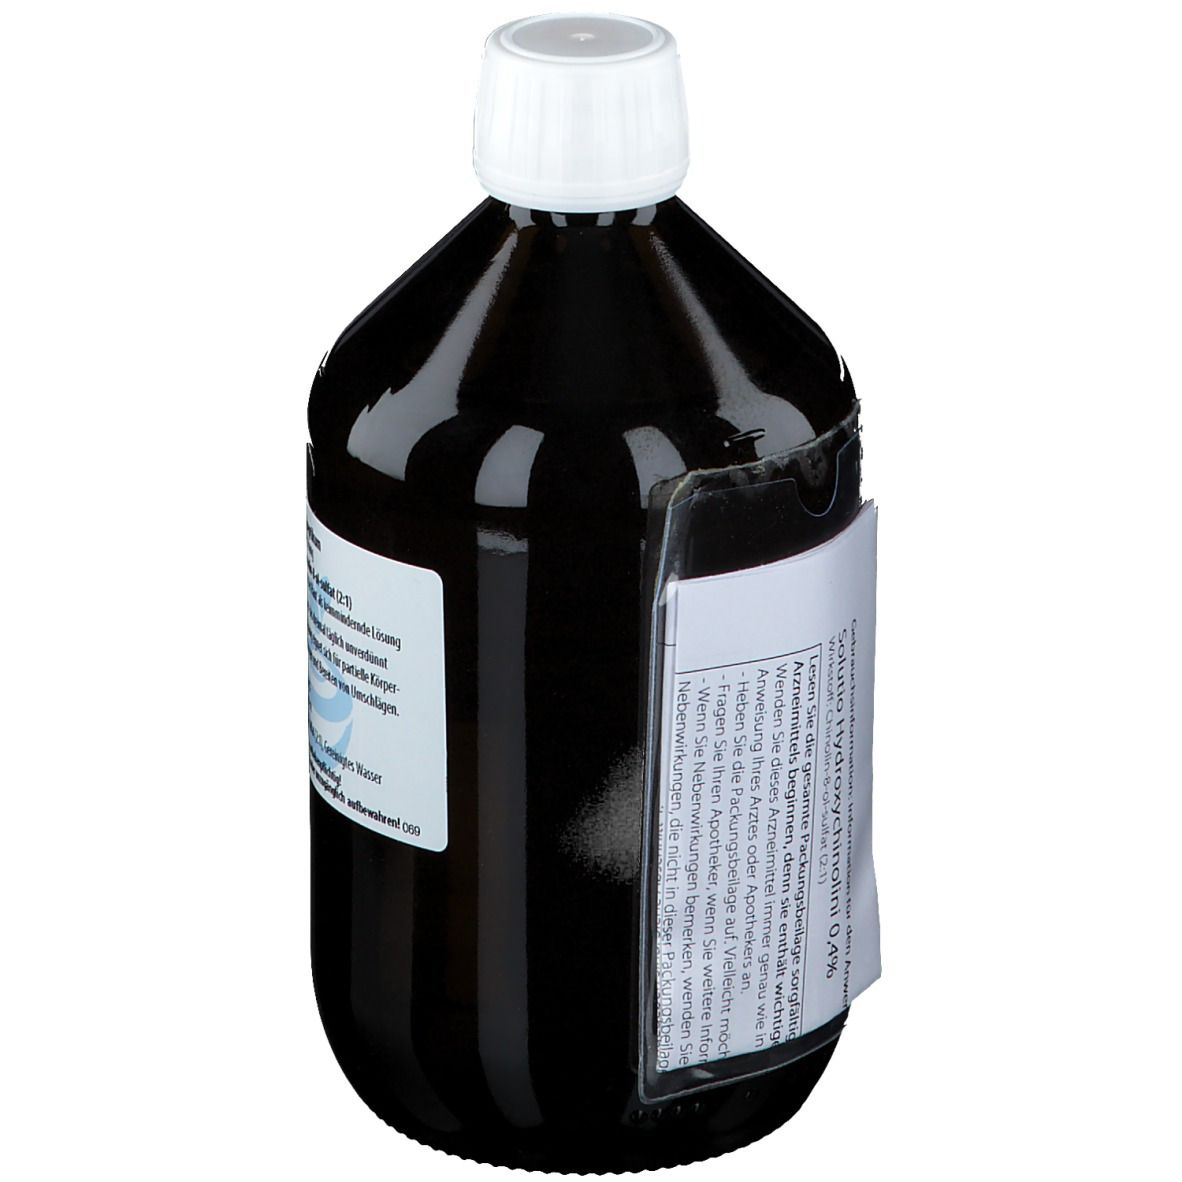 apomix® Solutio Hydroxychinolini 0,4 %